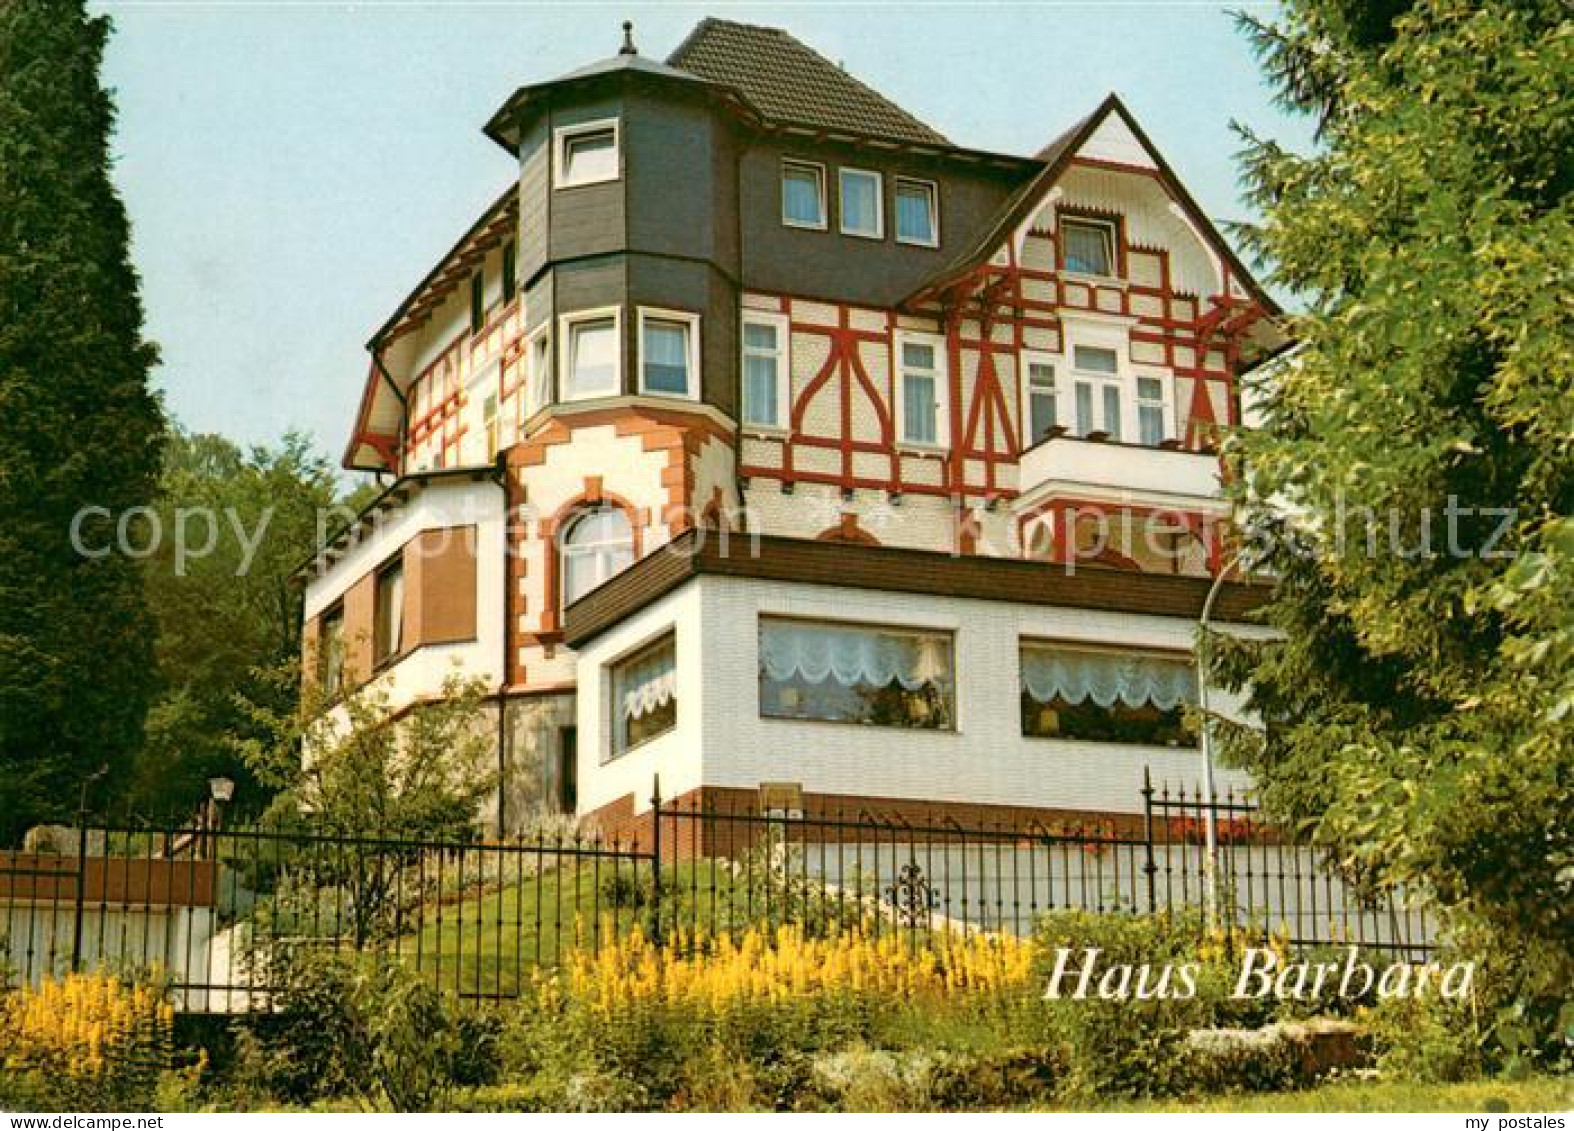 73635780 Bad Sachsa Harz Haus Barbara Bad Sachsa Harz - Bad Sachsa